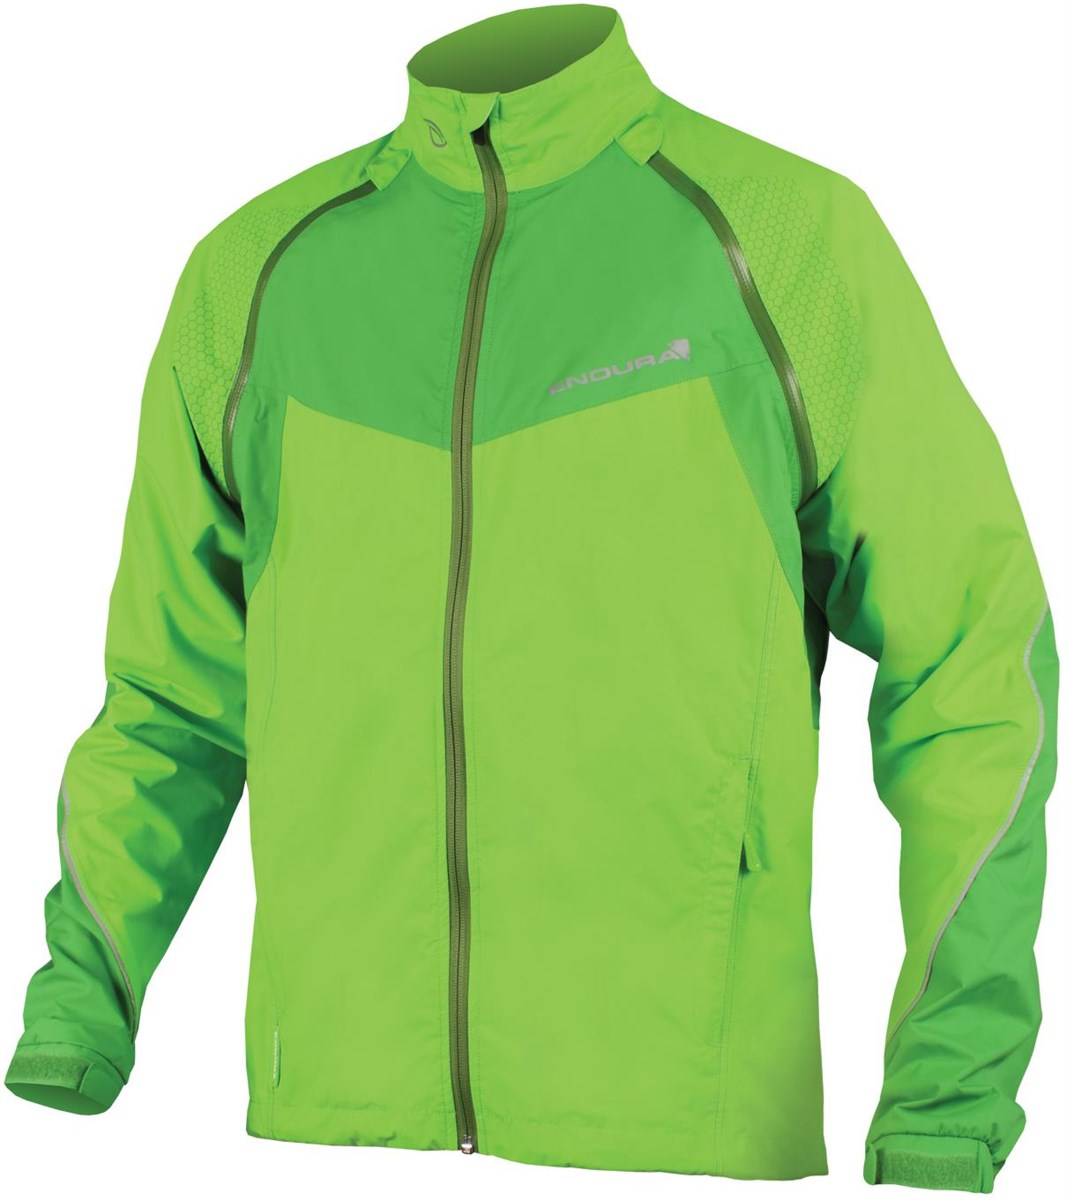 Endura Hummvee Convertible Waterproof Cycling Jacket product image